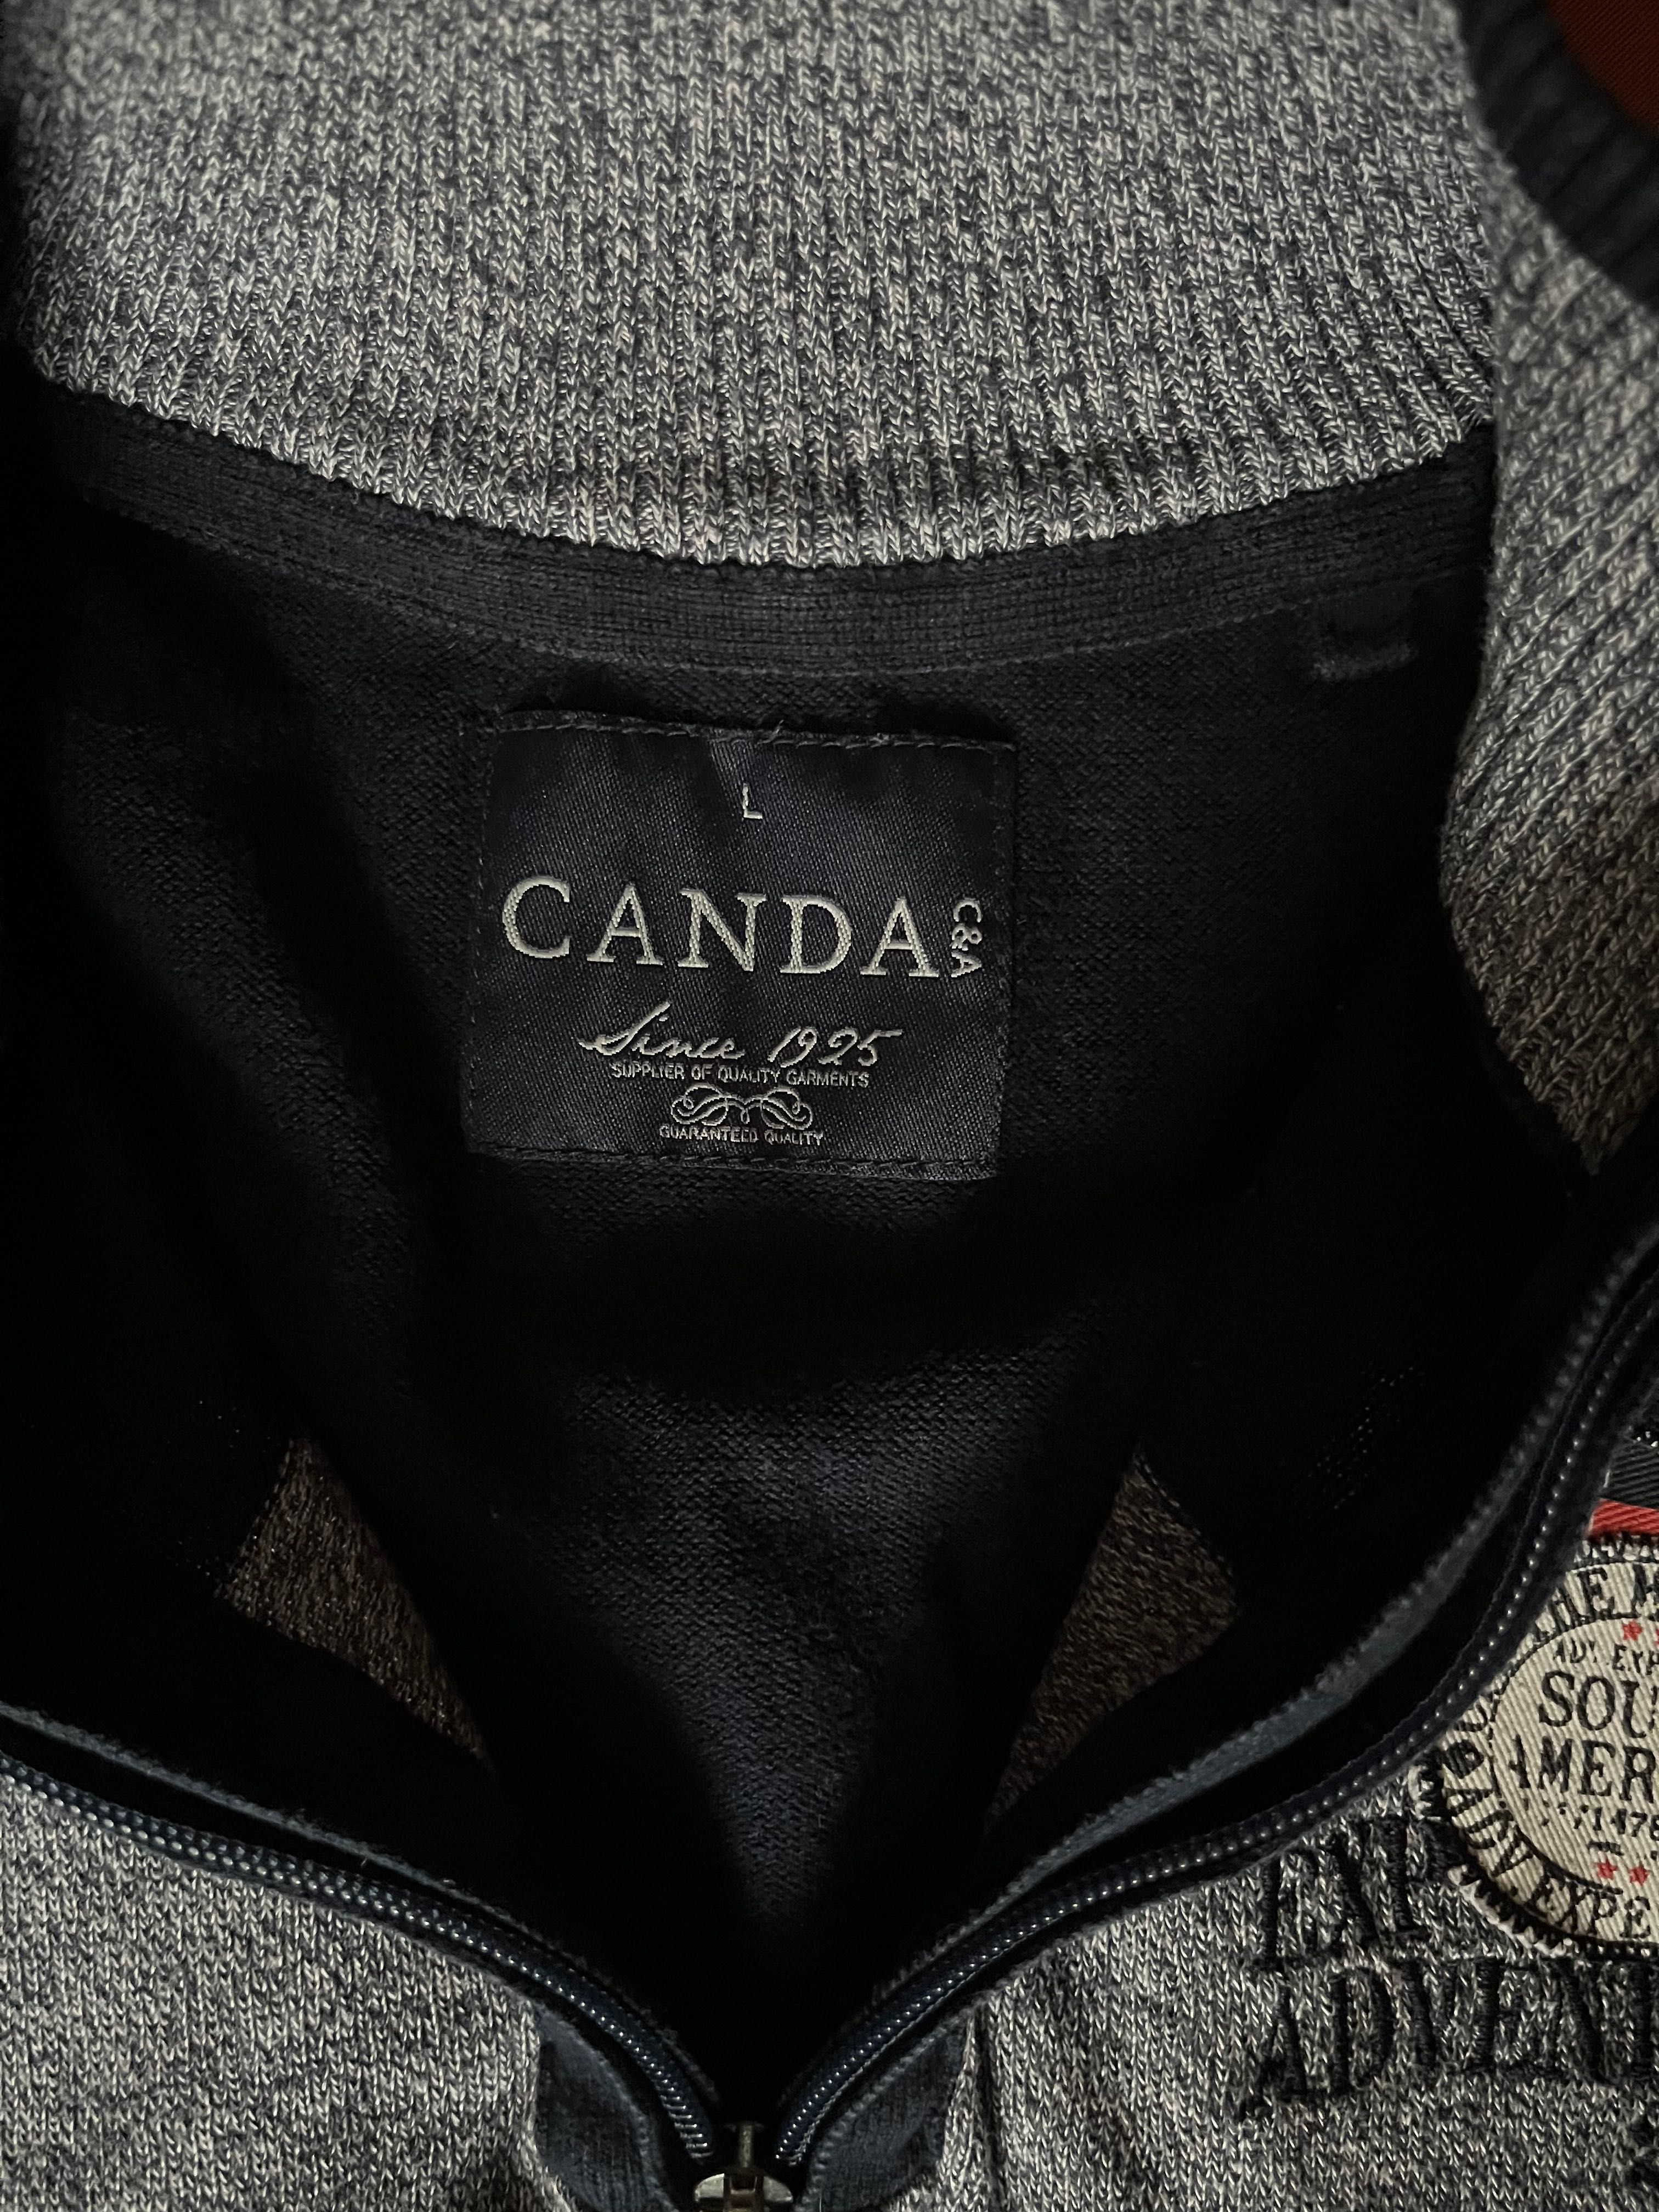 Свитер Canda от C&A мужской джемпер  толстовка 100% хлопок размер L